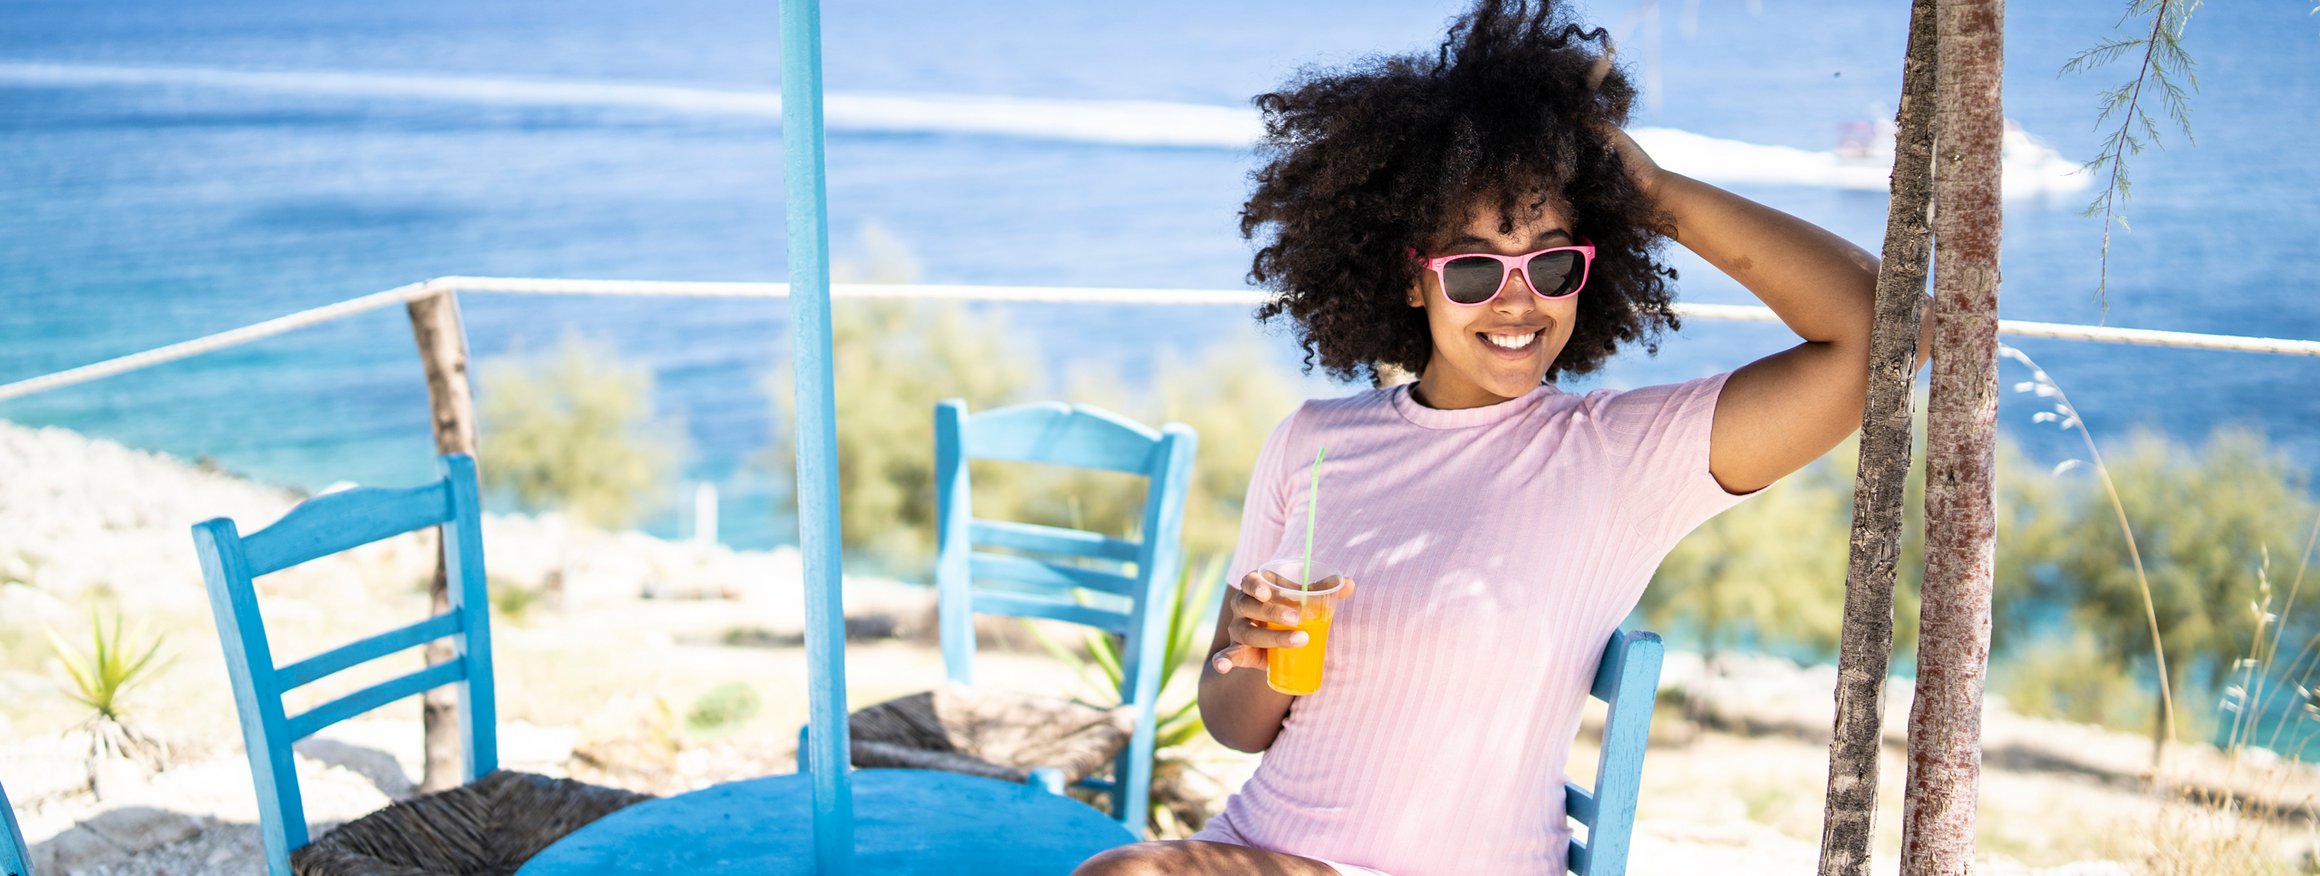 Eine junge Frau mit dunklem Lockenkopf und Sonnenbrille sitzt lachend mit einem Drink in der Hand an einer Strandbar